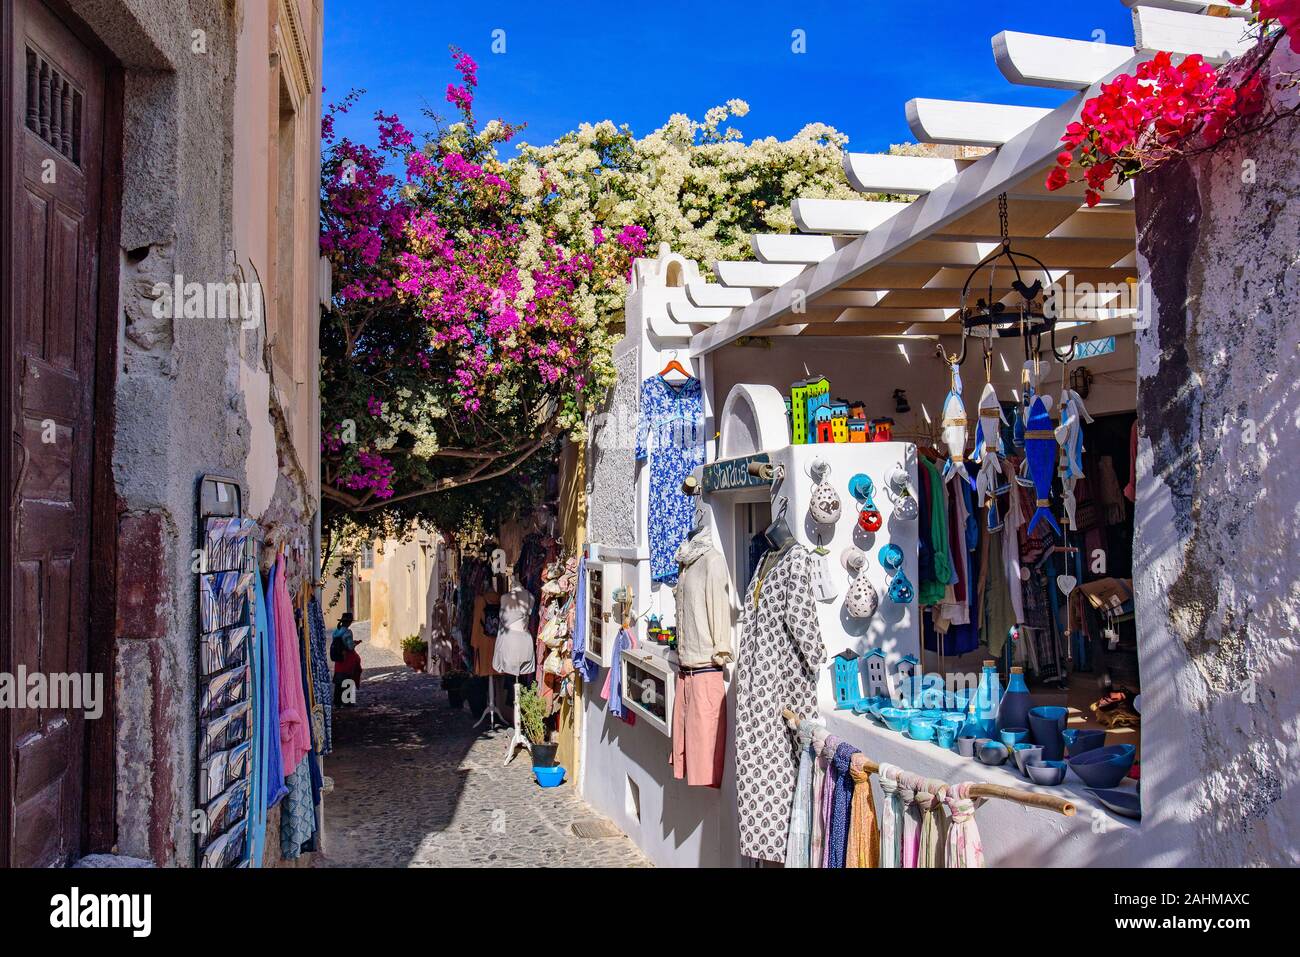 Souvenir shop in Oia, Santorini, Greece Stock Photo